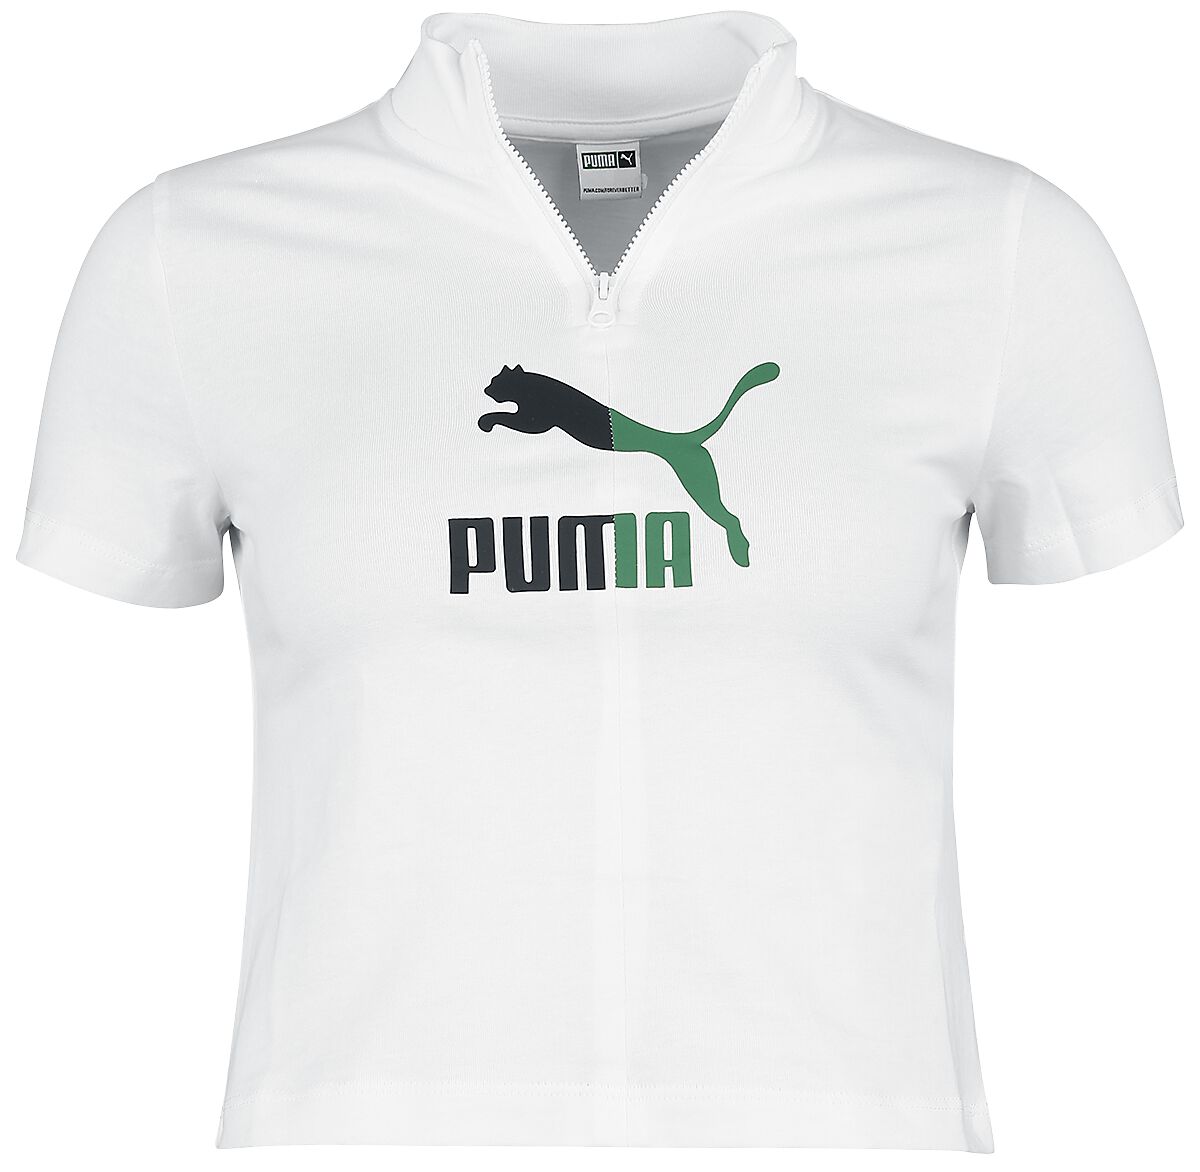 T-Shirt Manches courtes de Puma - CLASSICS ARCHIVE REMASTERED Tee - XS à XL - pour Femme - blanc